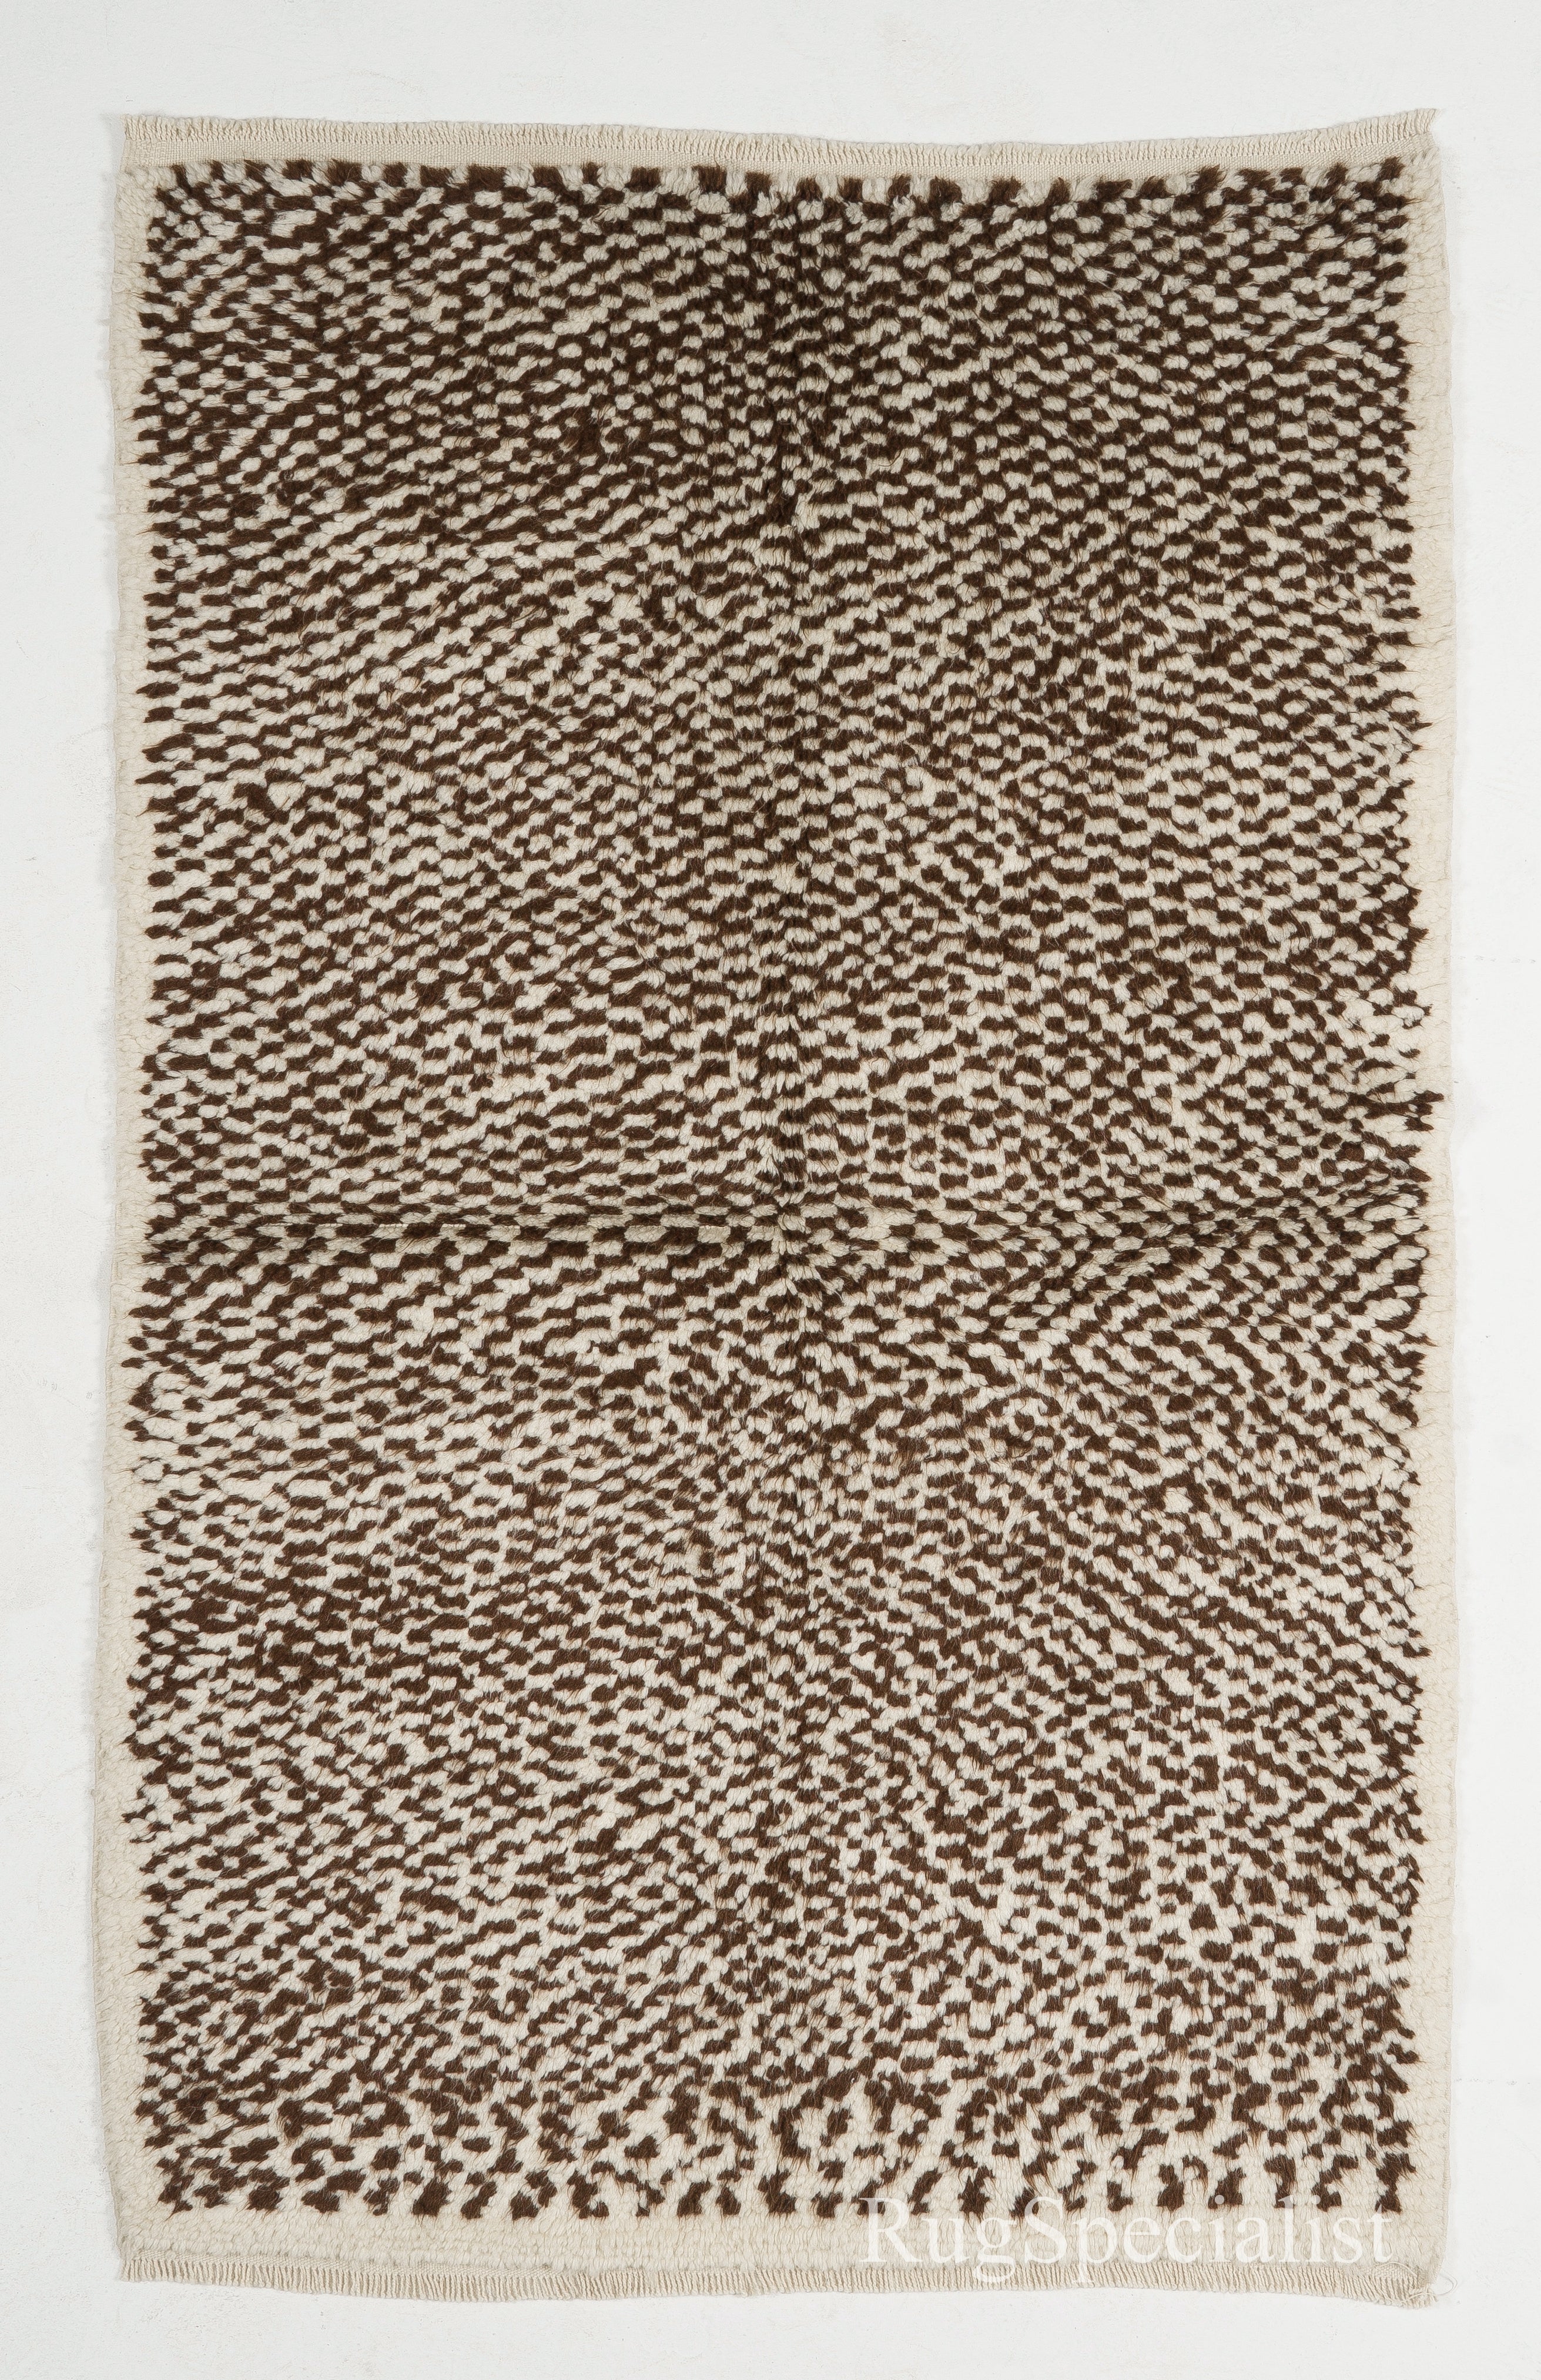 Karierter Tulu-Teppich, 100 % natürliche Wolle, cremefarben und braun, maßgefertigt erhältlich im Angebot